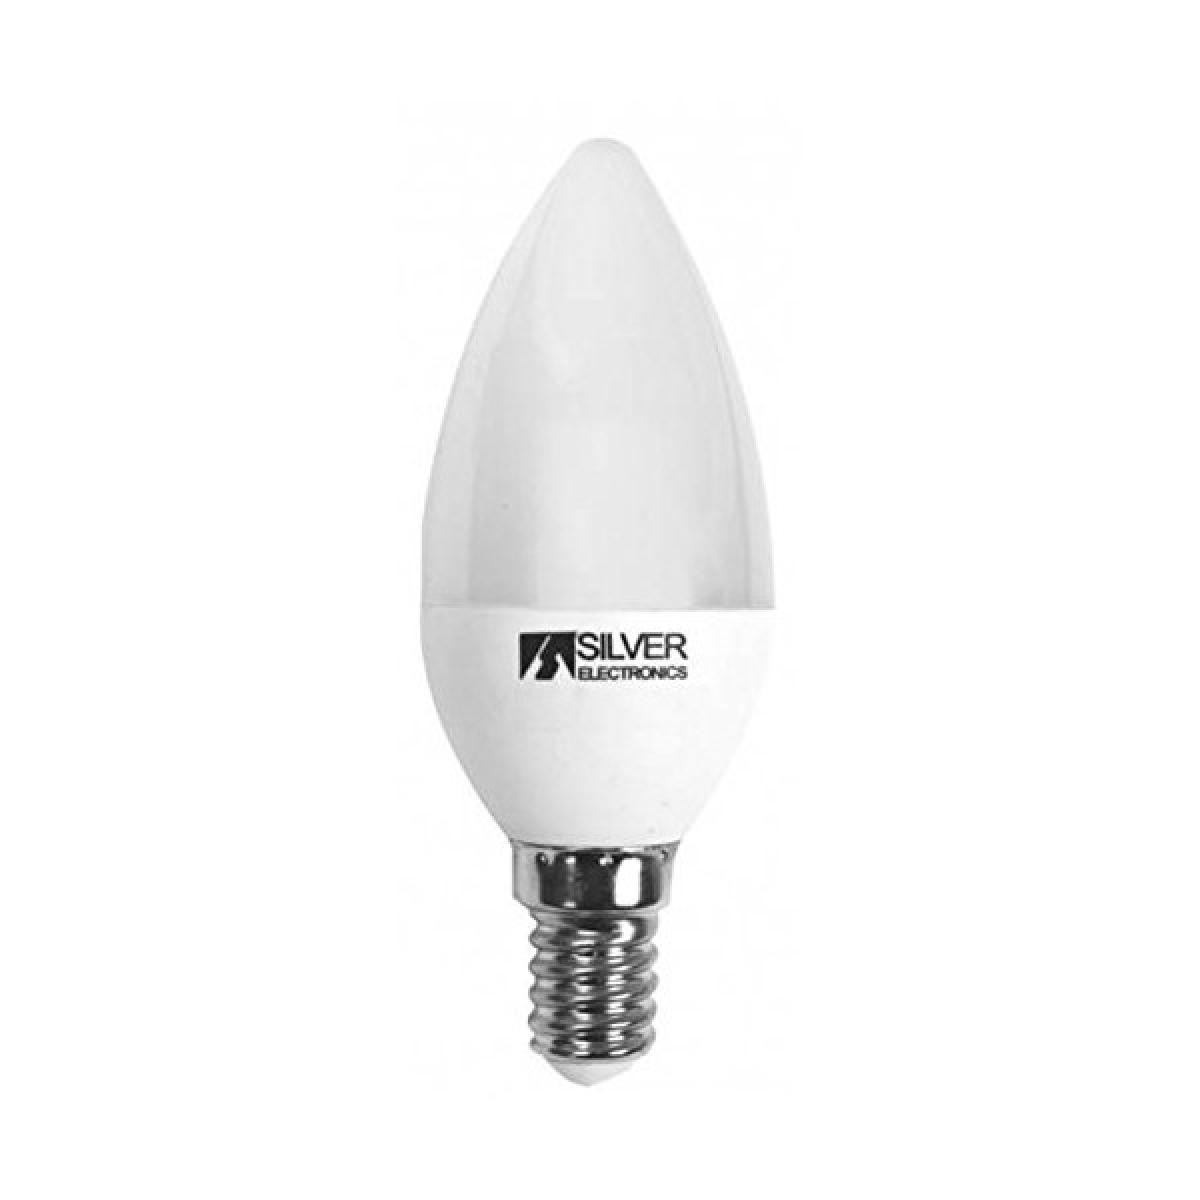 Totalcadeau - Ampoule LED Bougie E14 7W Lumière chaude - Ampoule pour lampe Choisissez votre option - 3000K pas cher - Ampoules LED